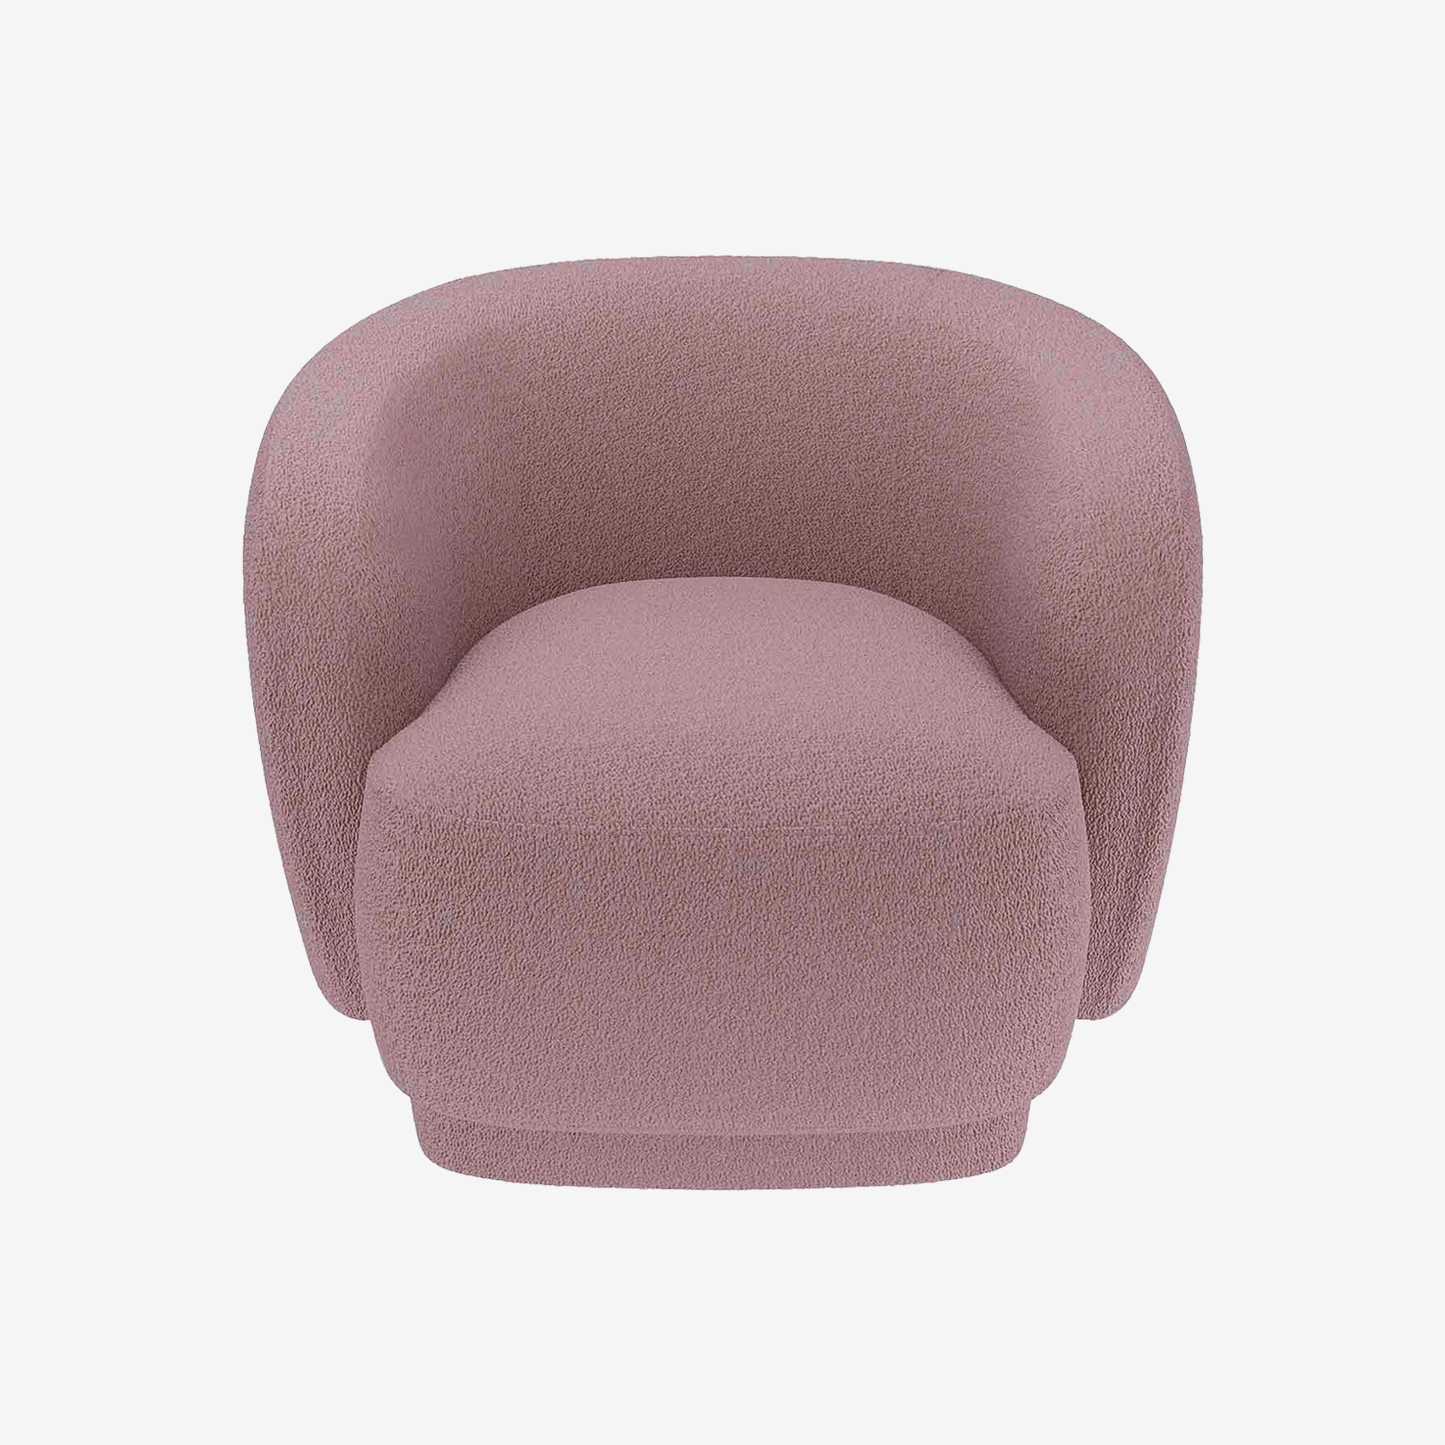 Gros fauteuil rond scandinave en tissu bouclé rose - Potitron Paris, la satisfaction du fauteuil design et confortable pas cher